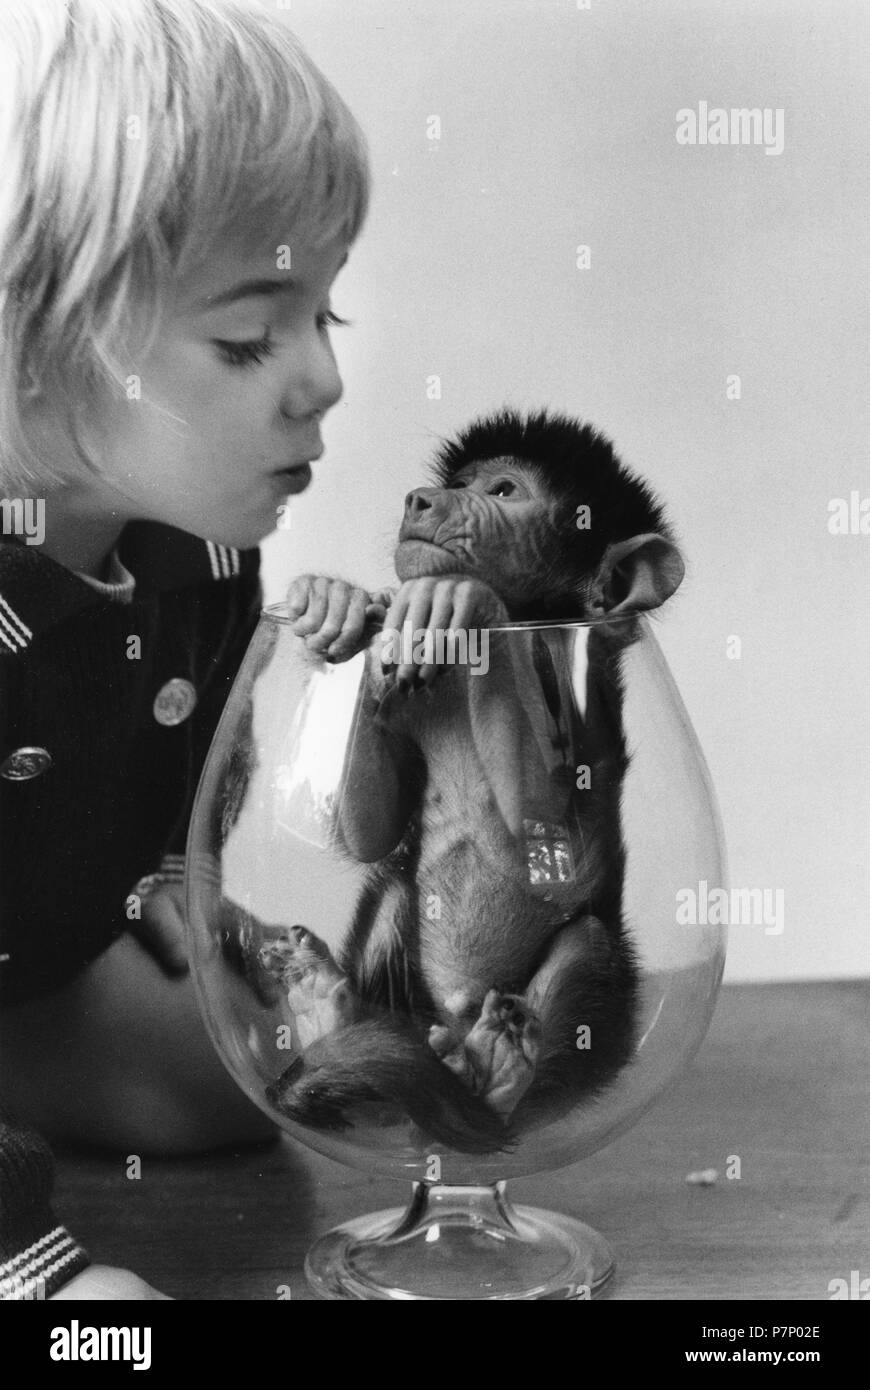 Girl un petit singe dans un verre, Angleterre, Grande-Bretagne Banque D'Images